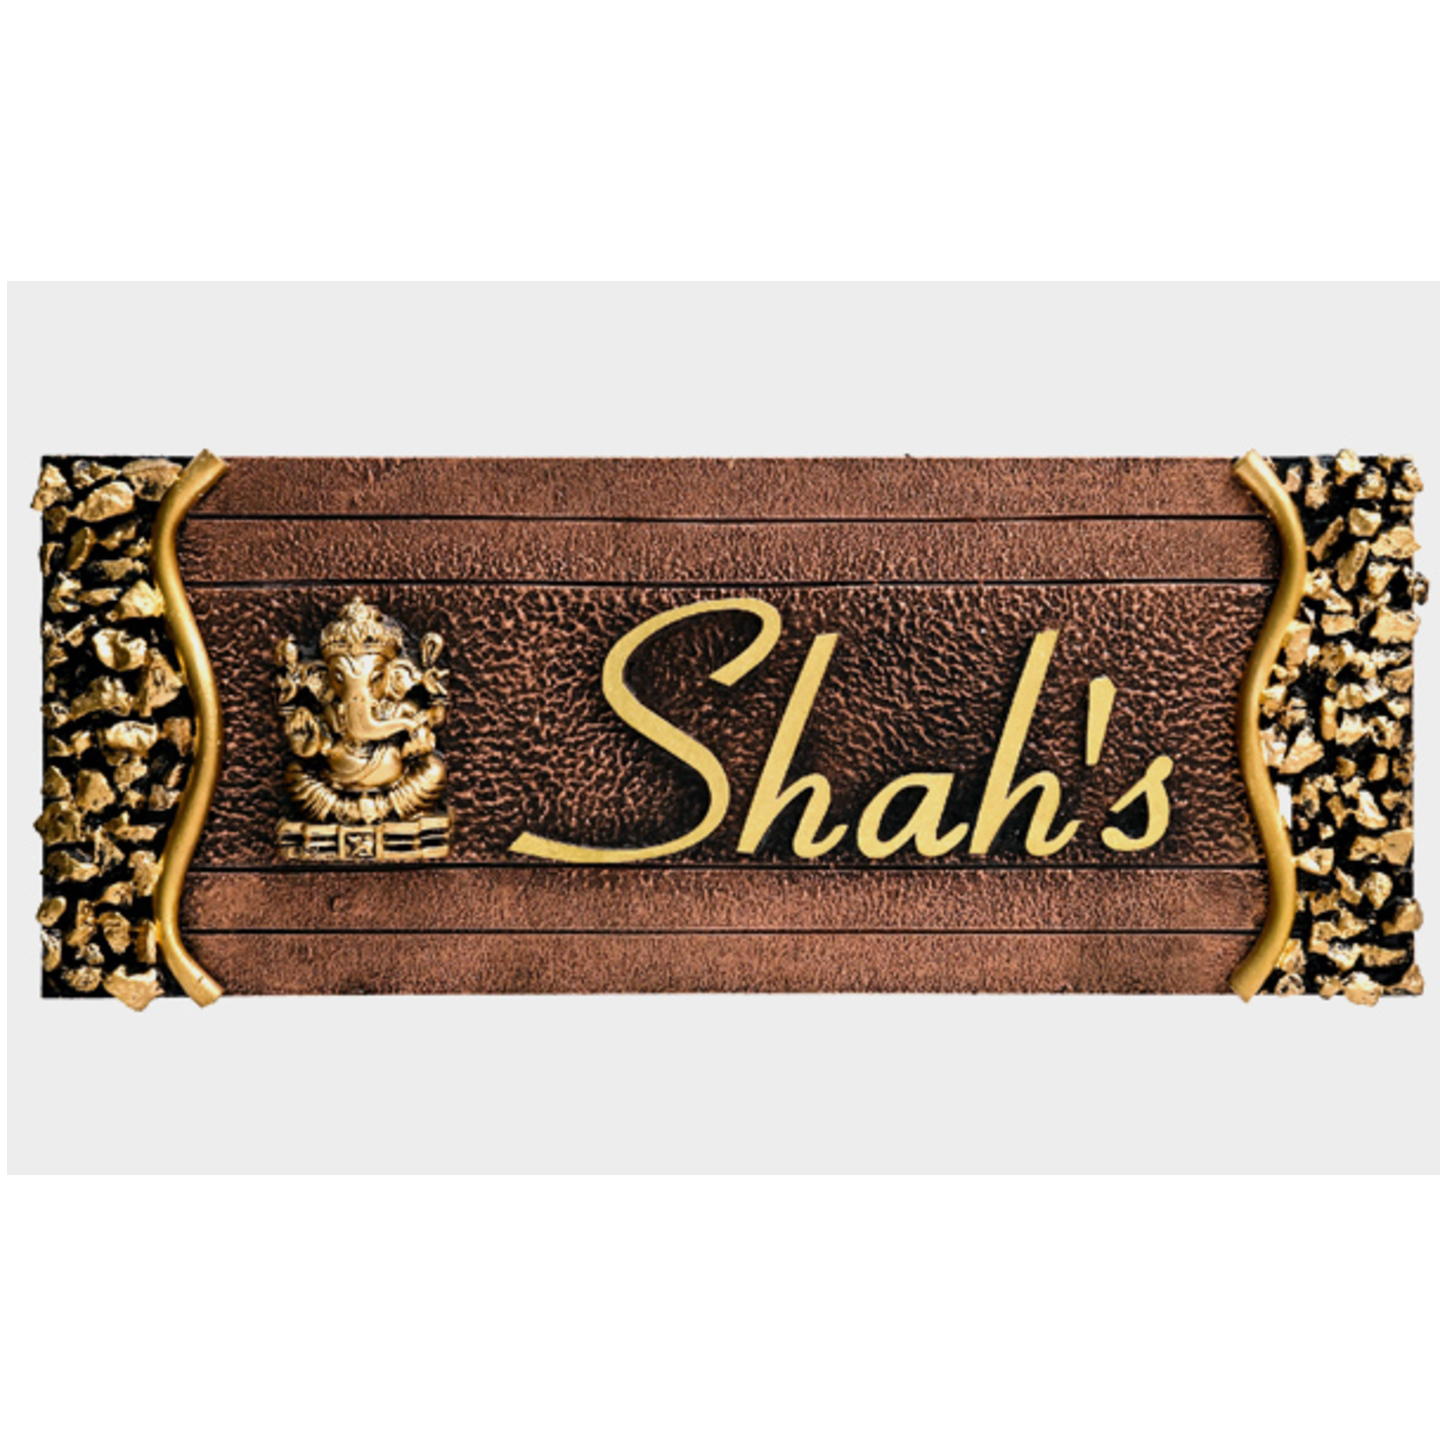 Shah wood